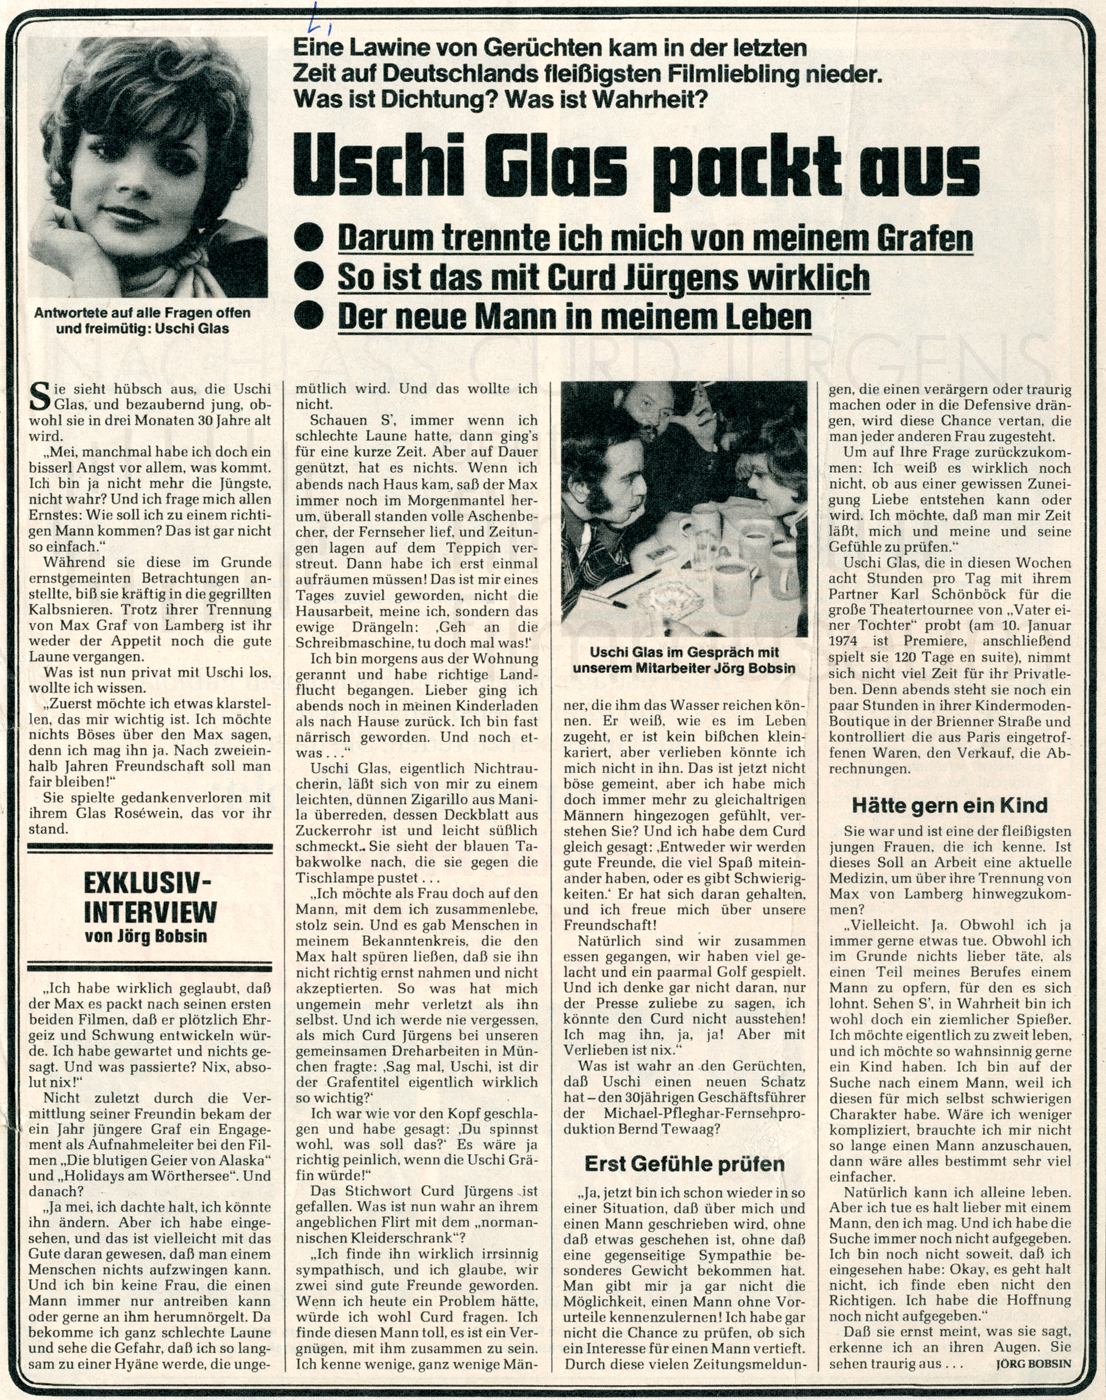 Das Neue Blatt: "Uschi Glas packt aus", 1974